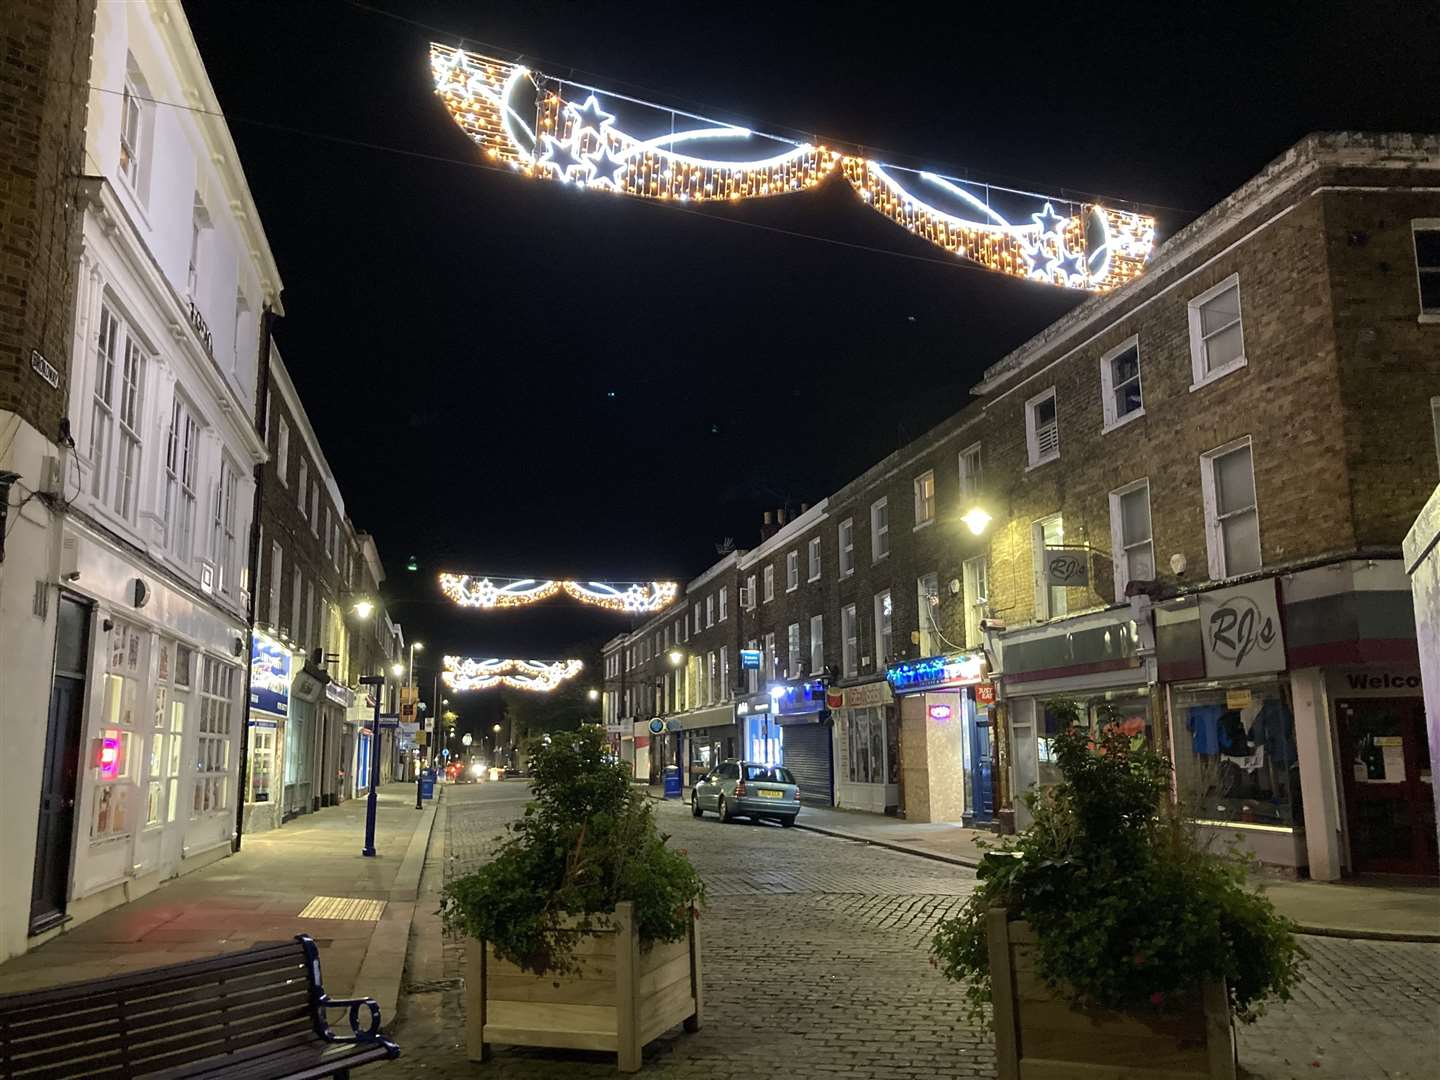 Sheerness Christmas lights 2021